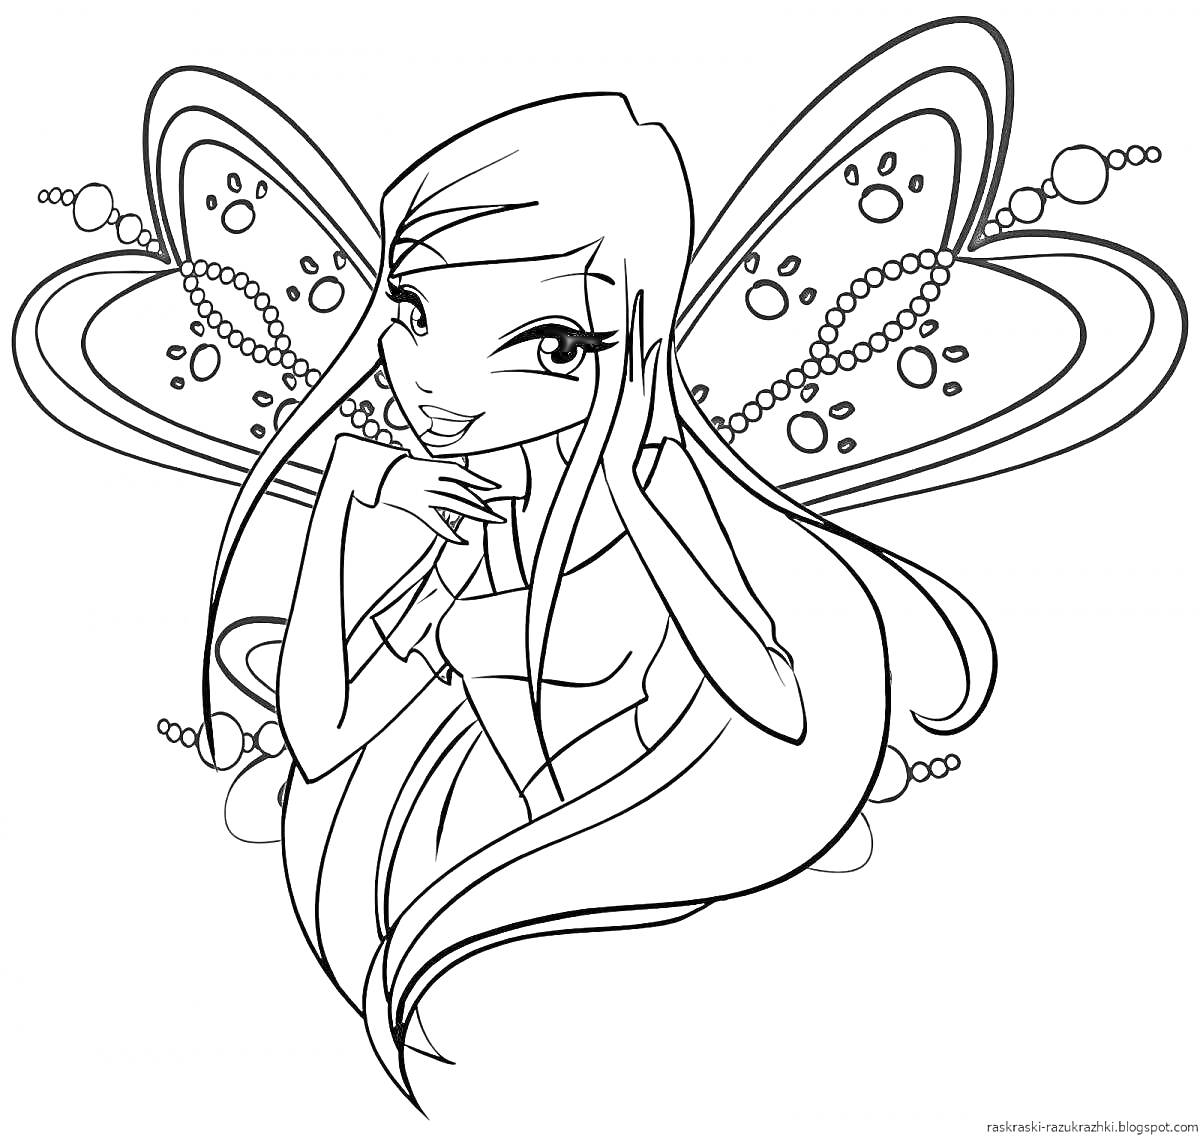 Волшебная фея с длинными волосами и крыльями, украшенными узорами и бусинами